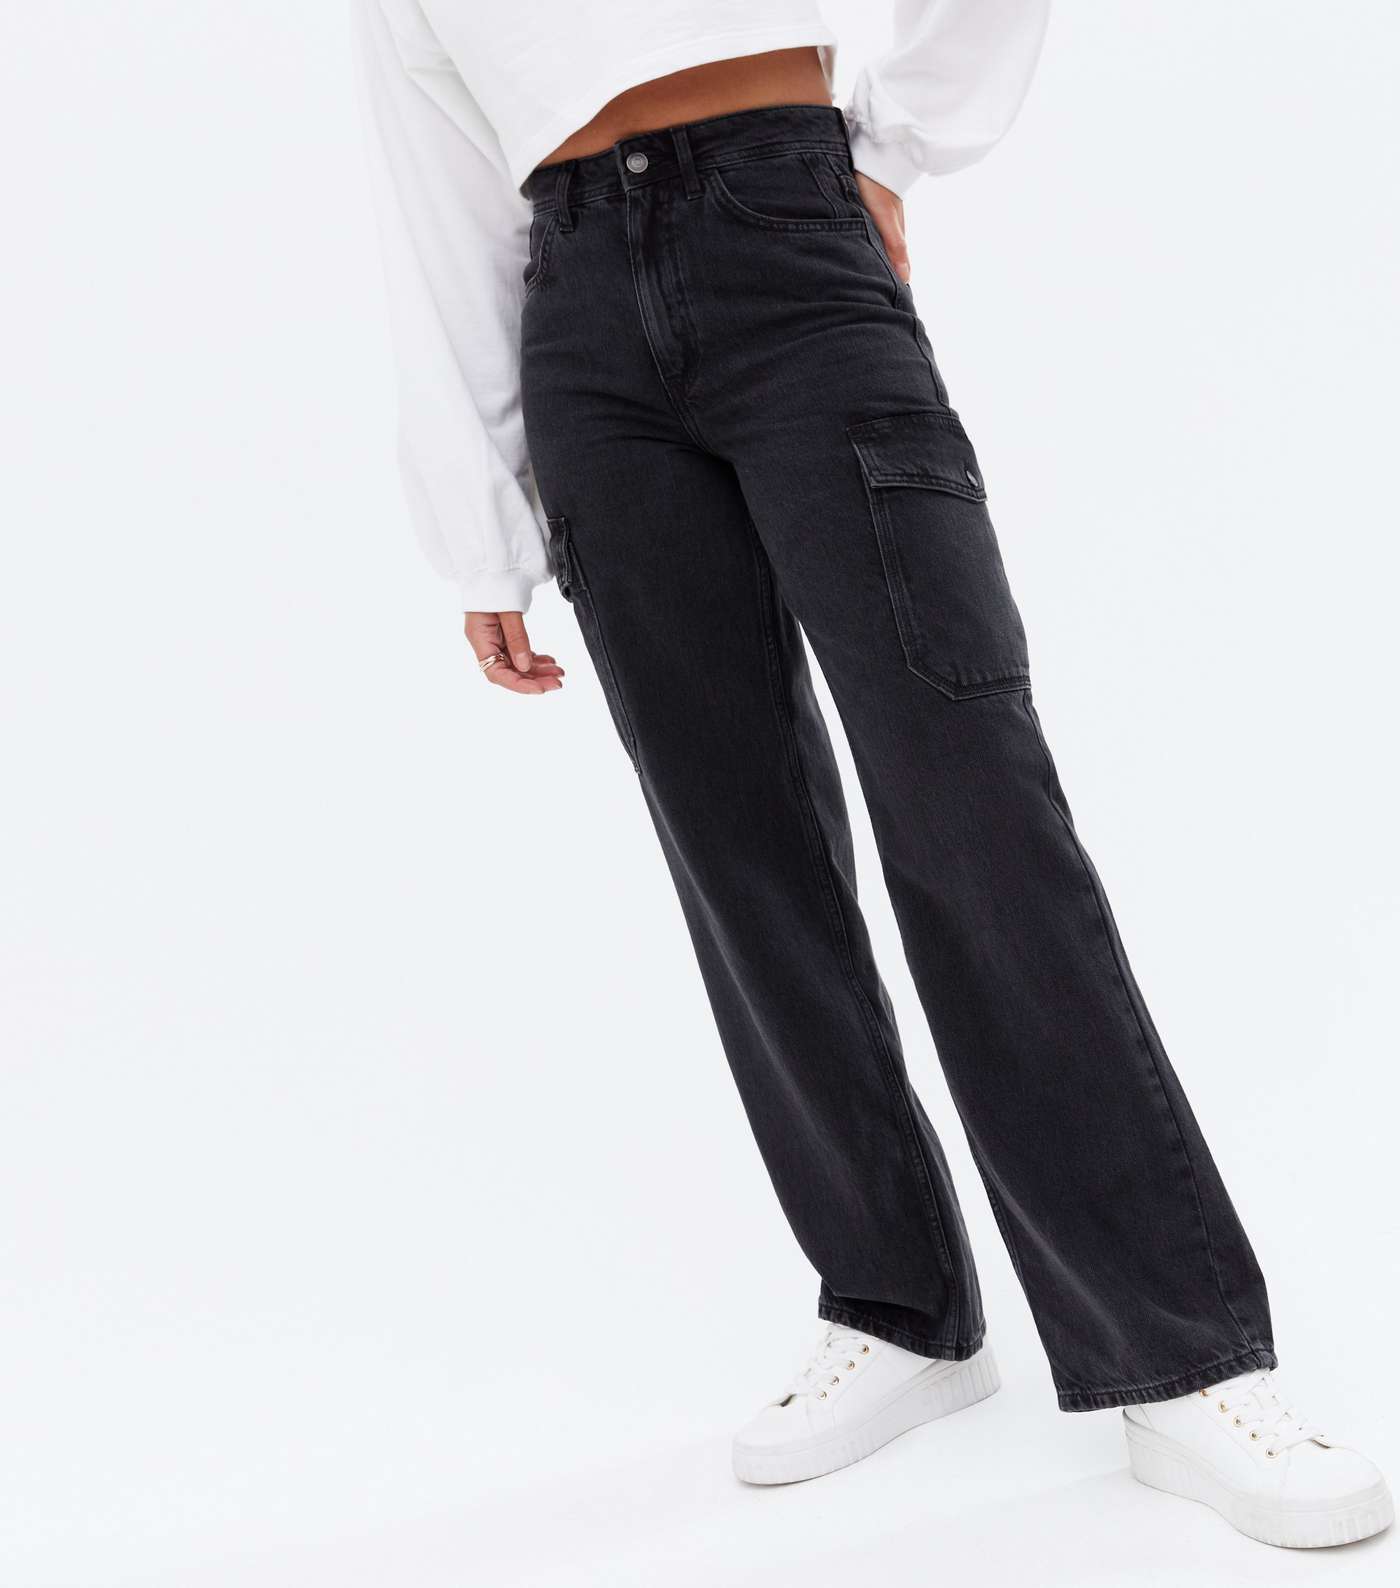 Black Cargo Pocket 90s Baggy Fit Jeans Image 2